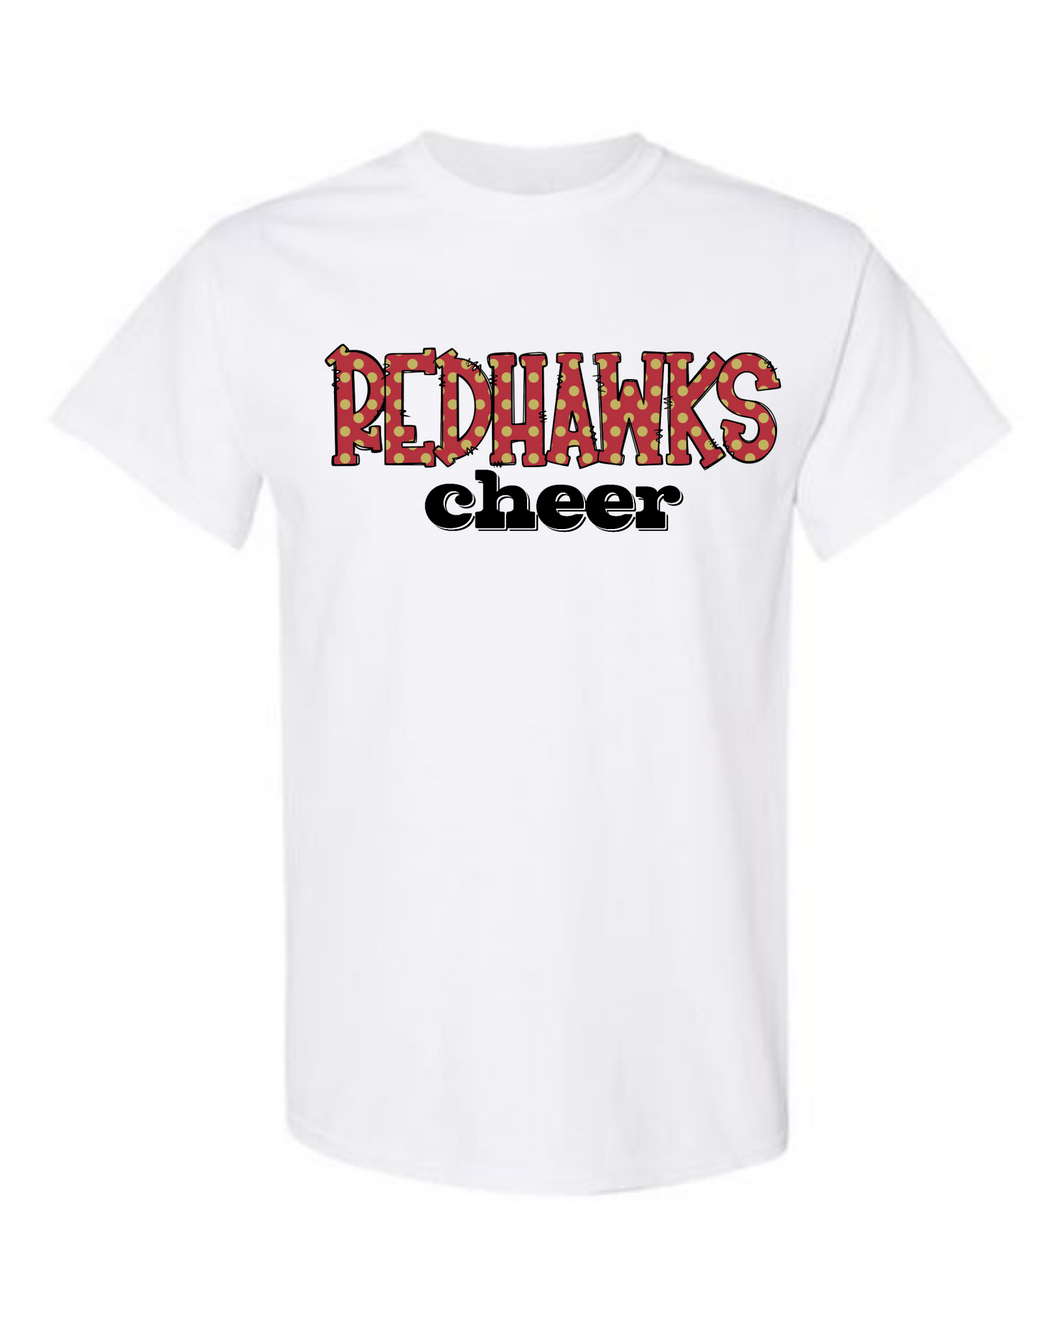 Redhawks Cheer Tshirt